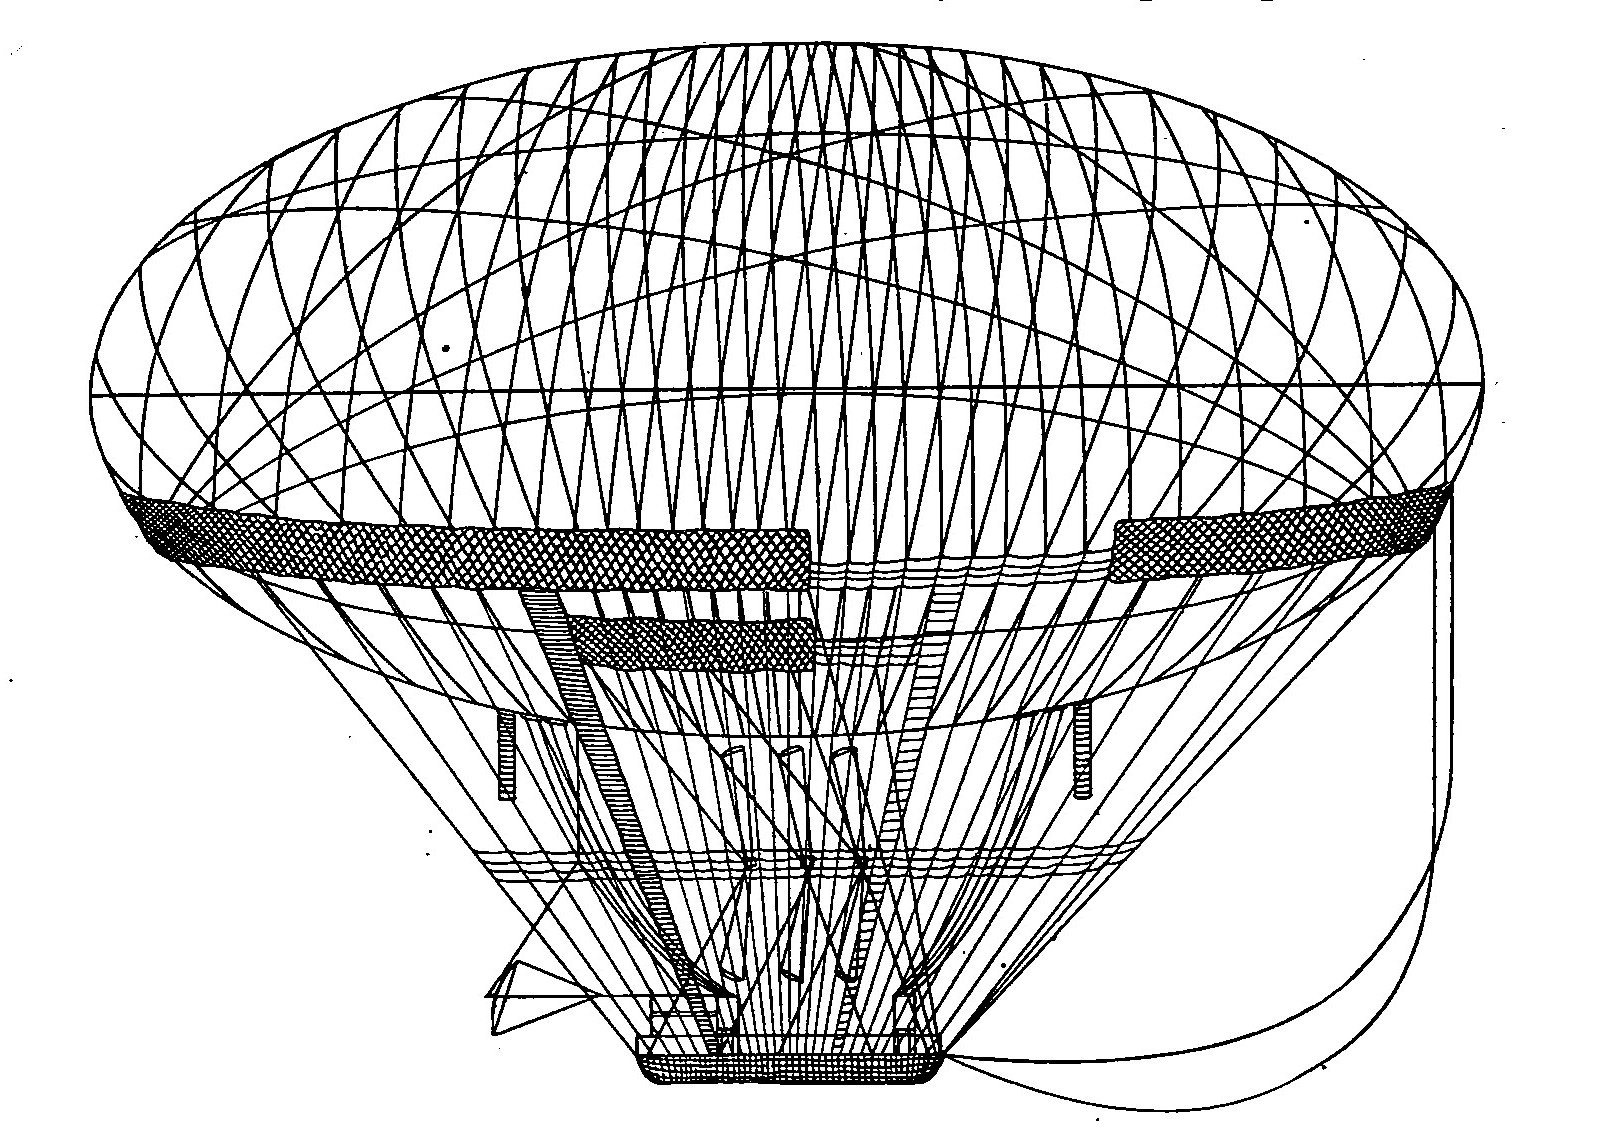 Fig. 5. Meusnier Dirigible Balloon